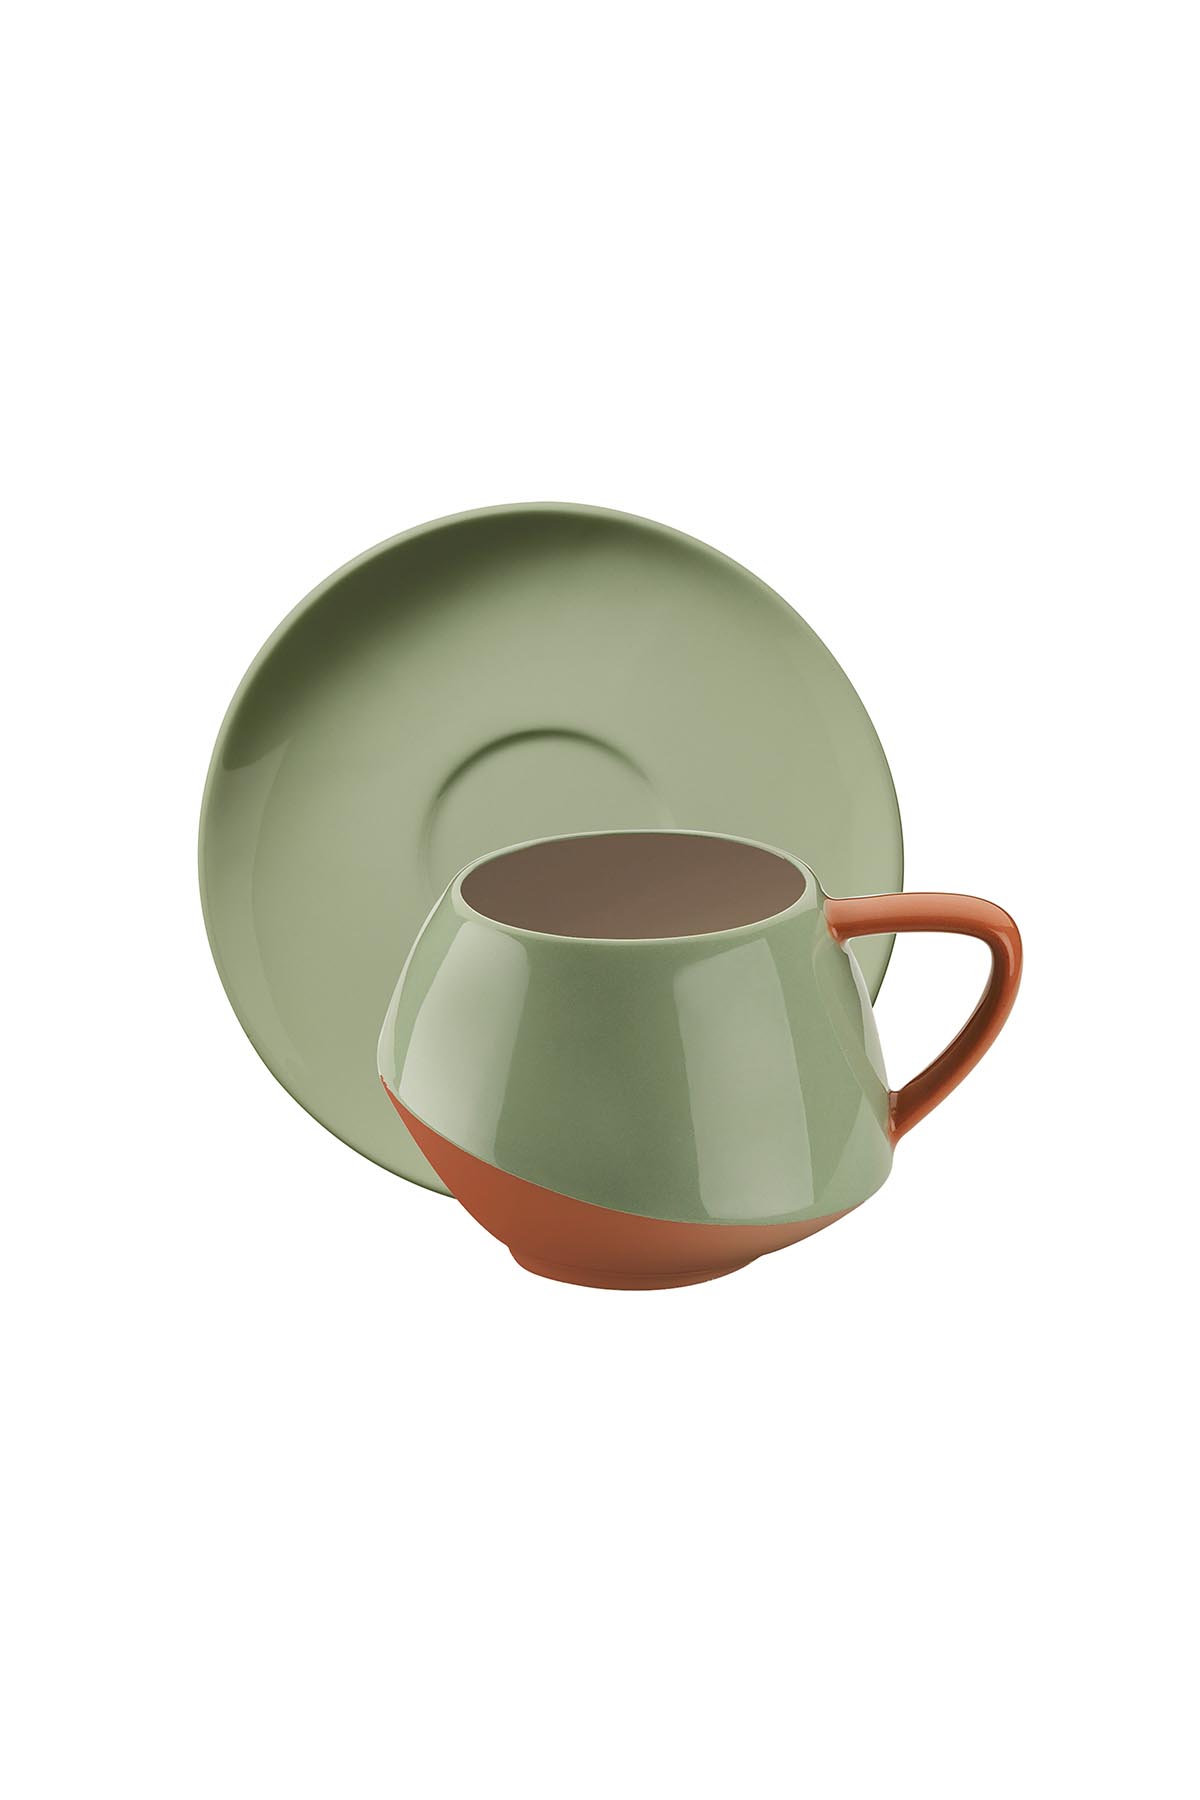 Kütahya Porselen Aura Çay Takımı Krem-Yeşil-Bej-Kırmızı